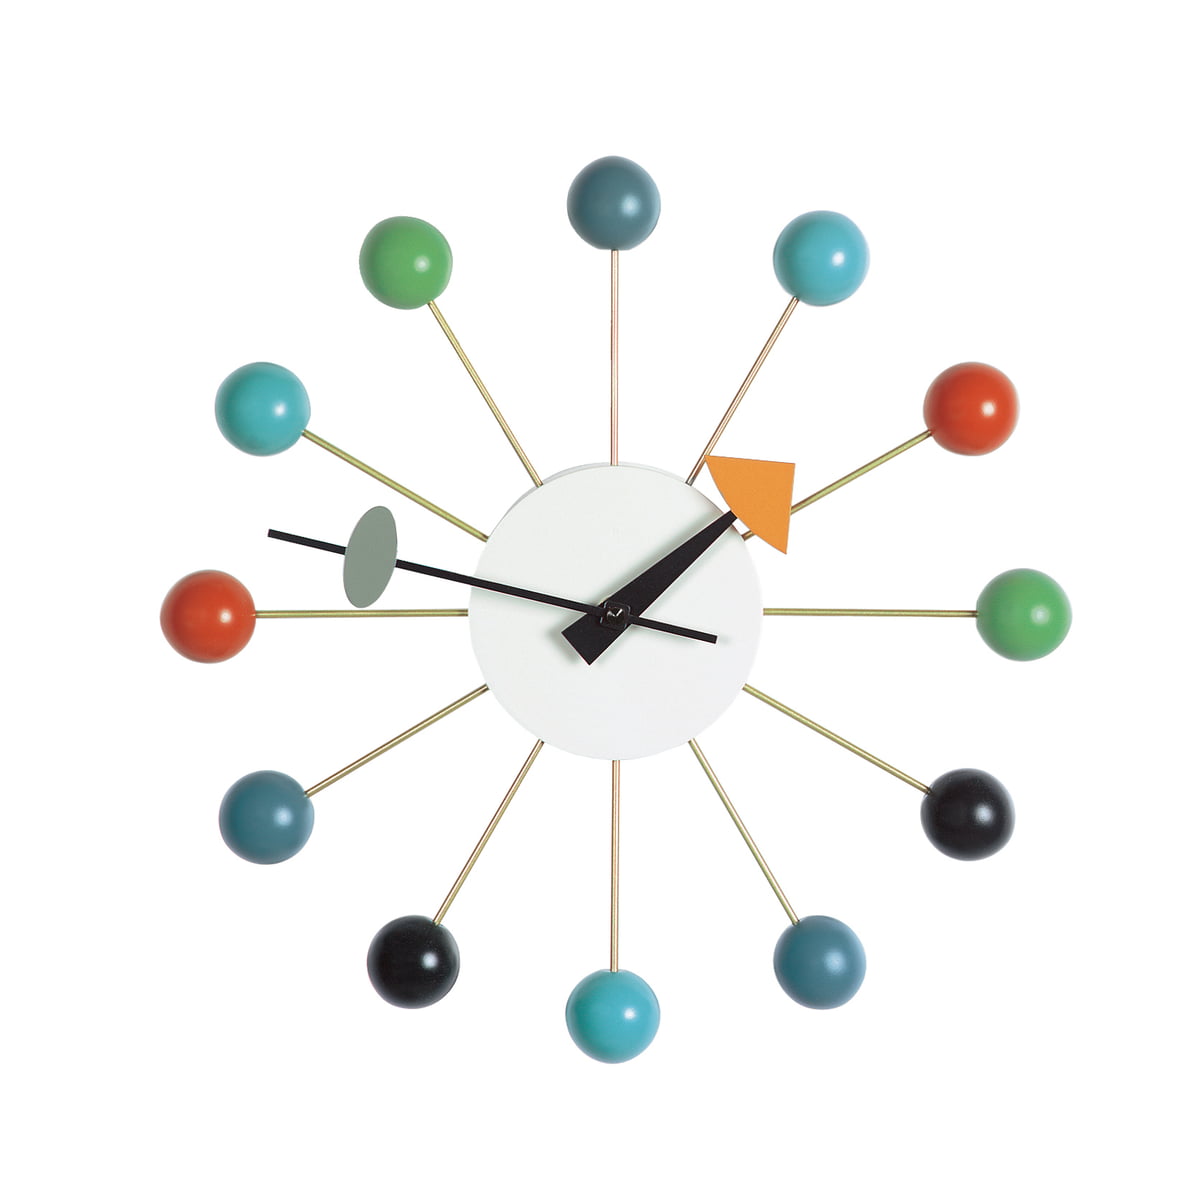 Ball Clock: Multicolor - SFMOMA Museum Store